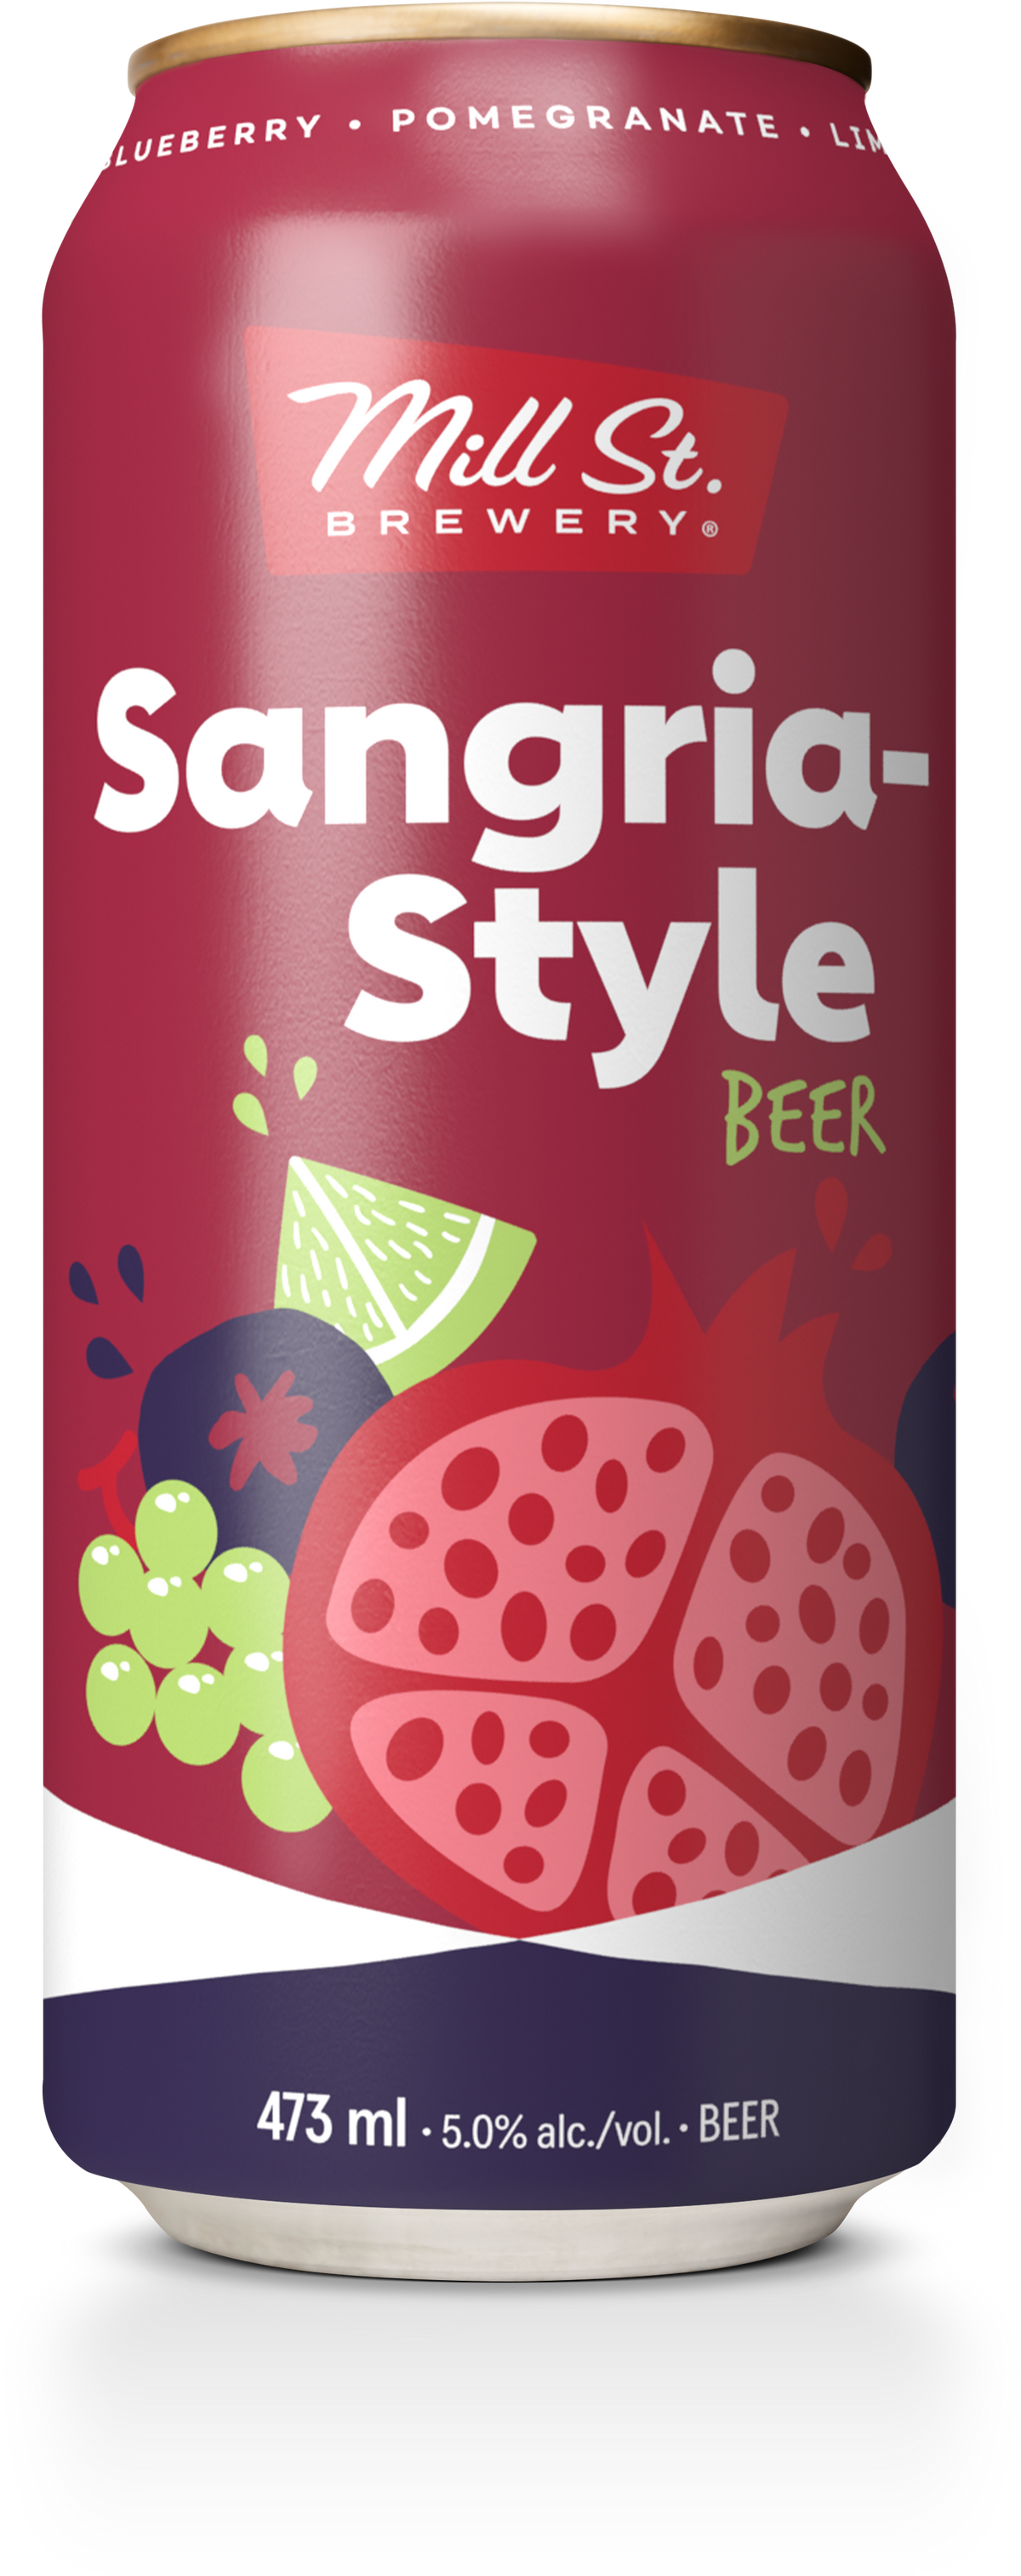 Sangria-Style Beer